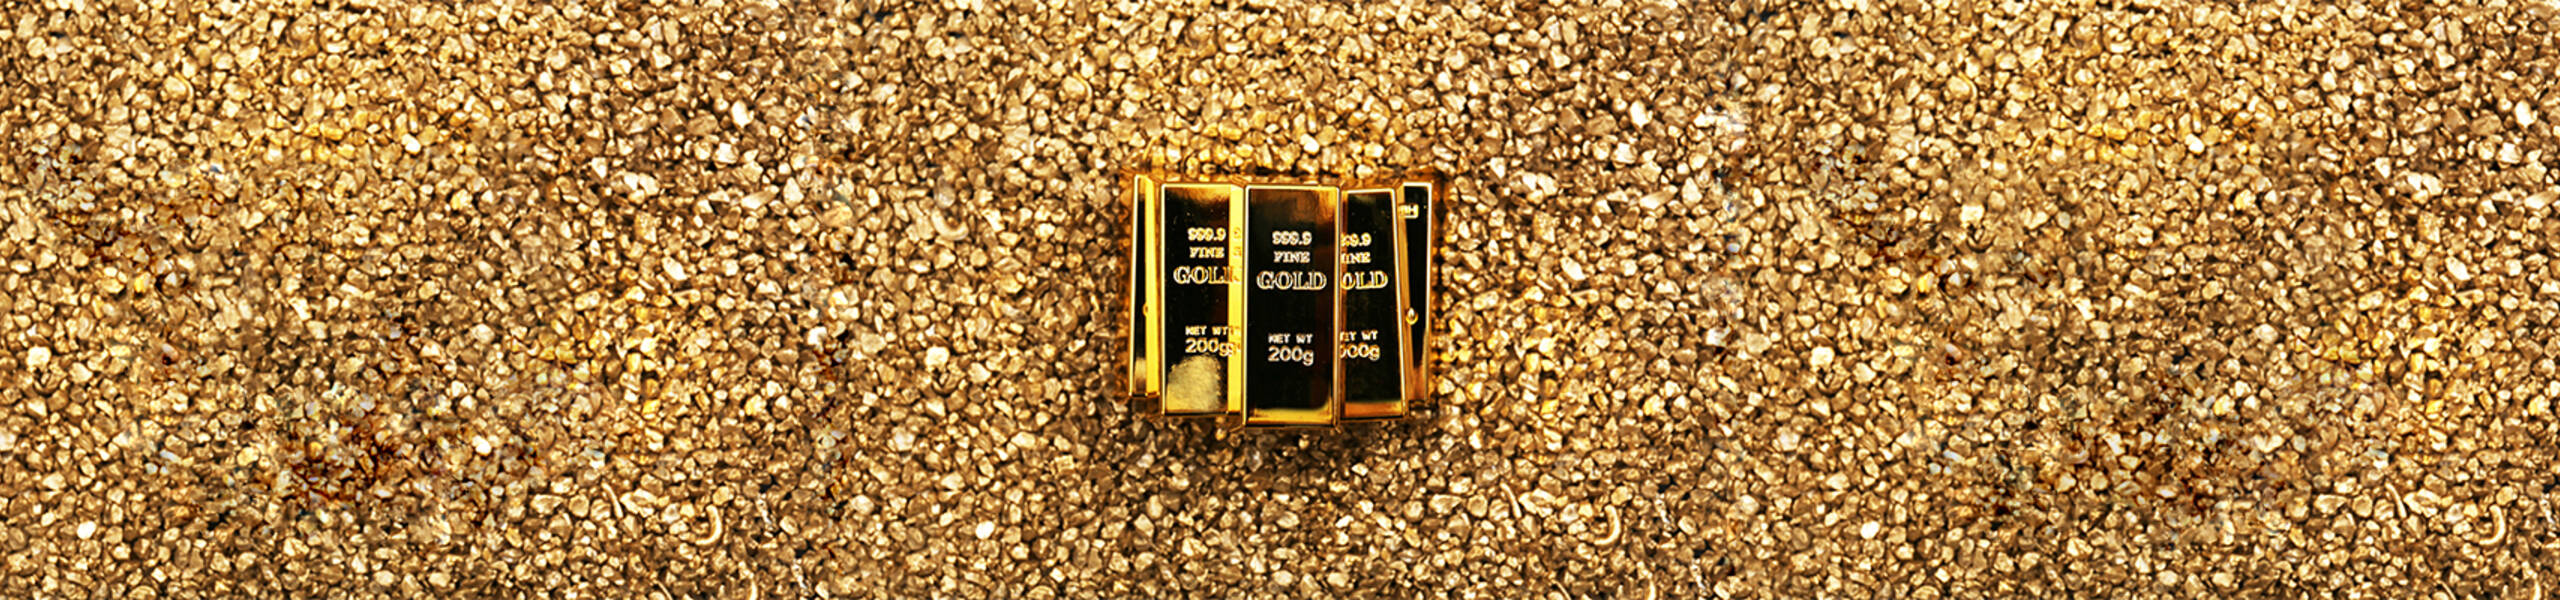 Harga emas mendekati sasaran - Analisis - 04-06-2018